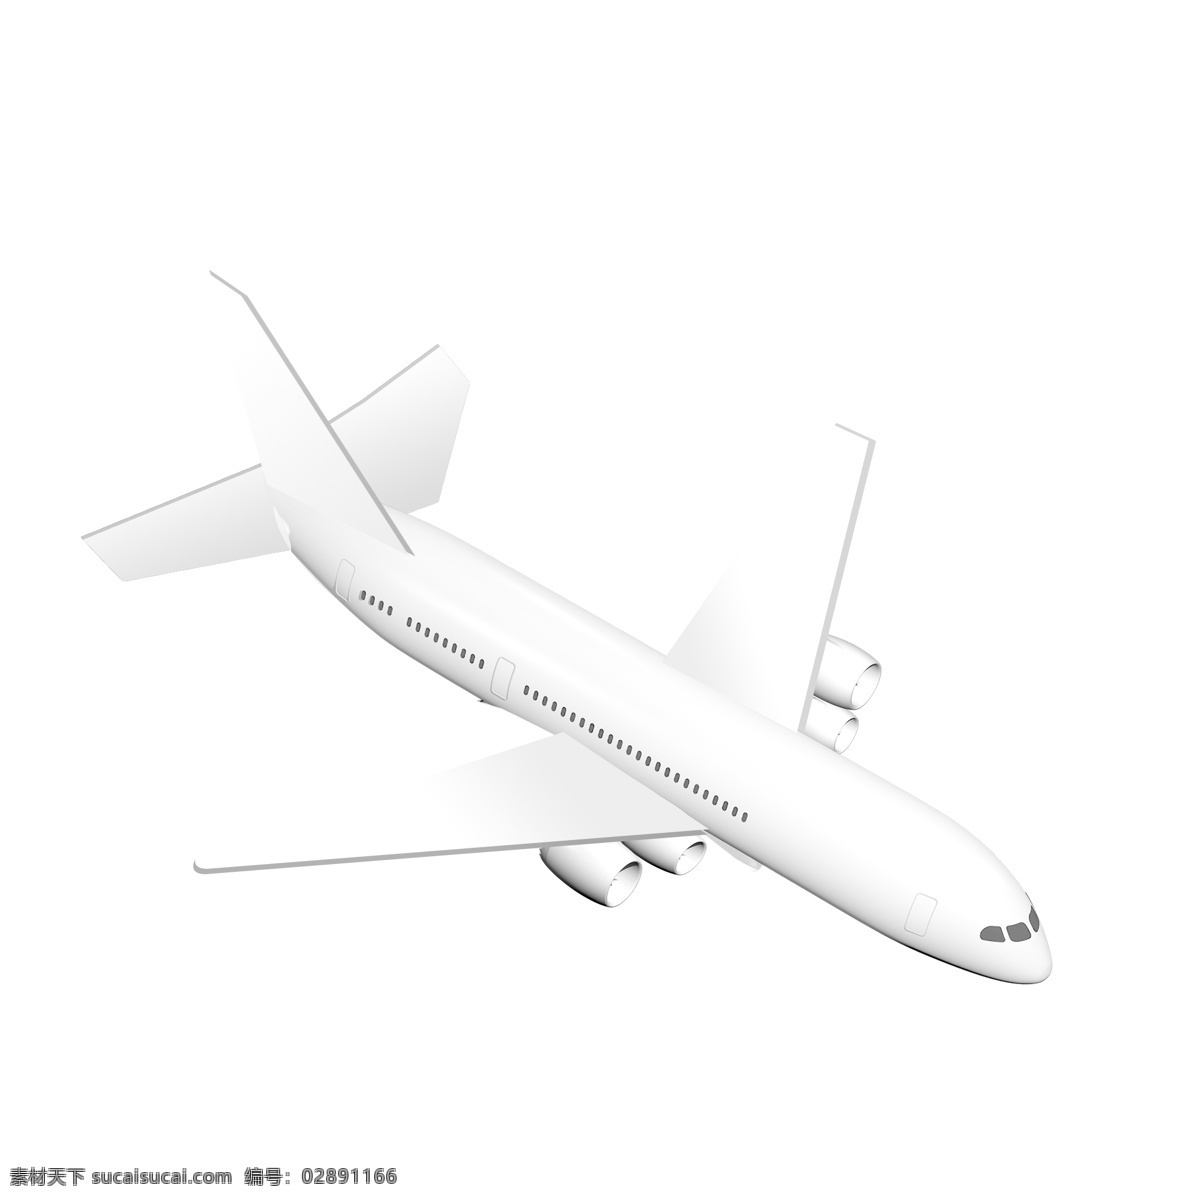 飞机元素图片 飞机 元素 飞机元素 纸飞机 飞机模型 大客机 06元素